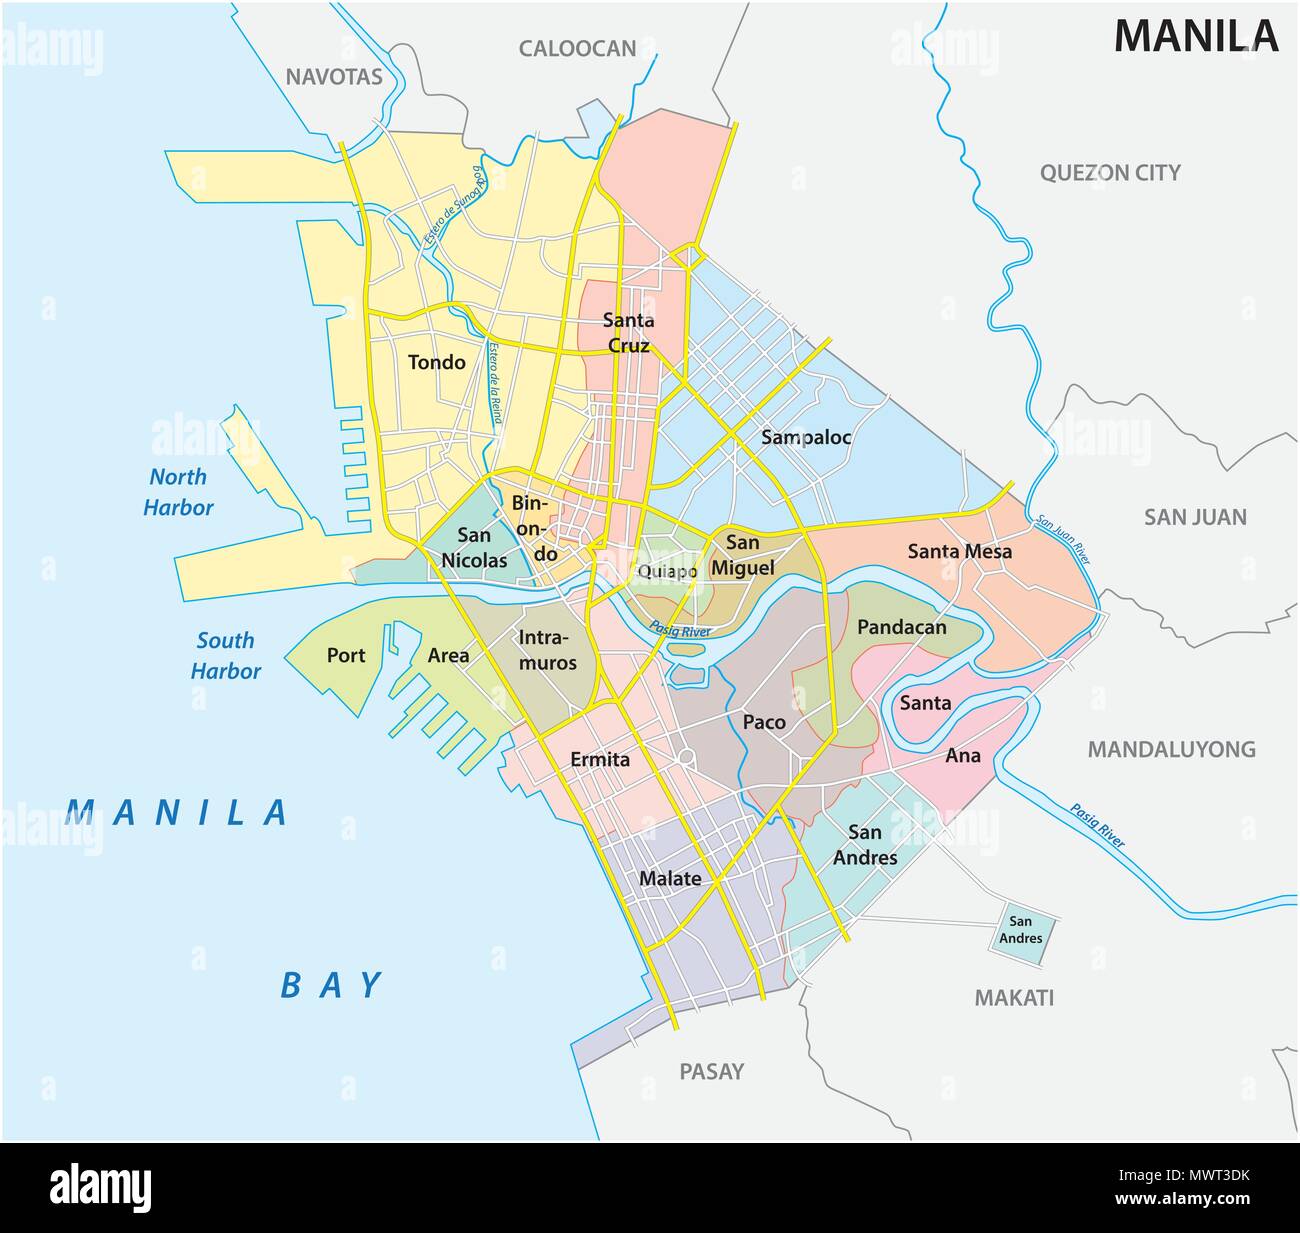 Manila amministrativo, politico e strada mappa vettoriale, Filippine Illustrazione Vettoriale